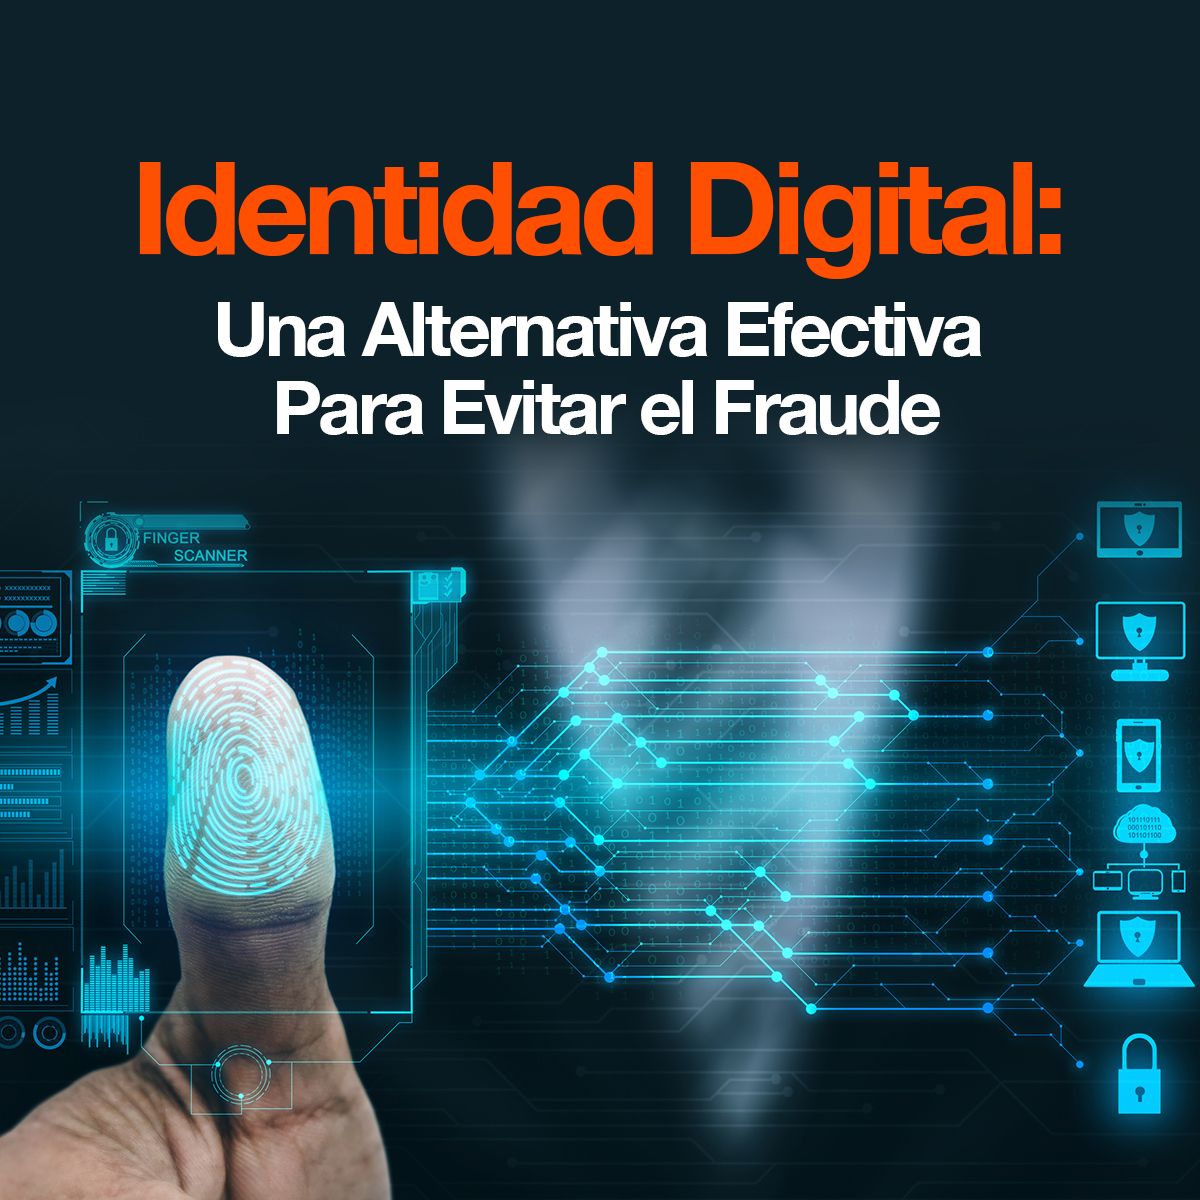 Identidad Digital: Una Alternativa Efectiva Para Evitar el Fraude